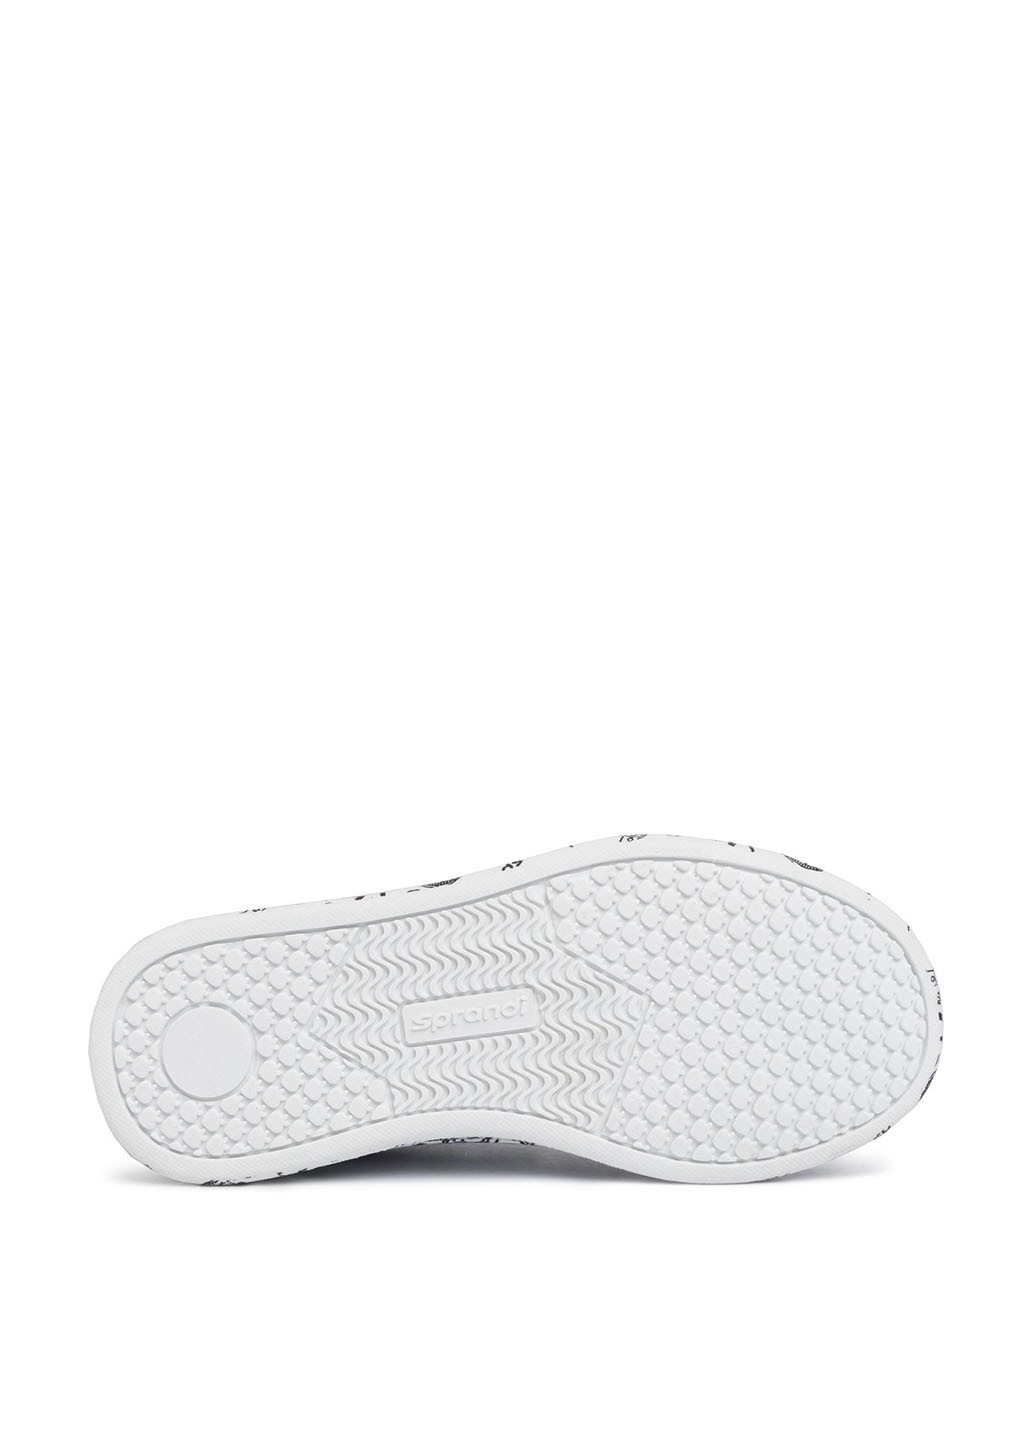 Белые кросівки  cp11-18637 Sprandi Sprandi CP11-18637